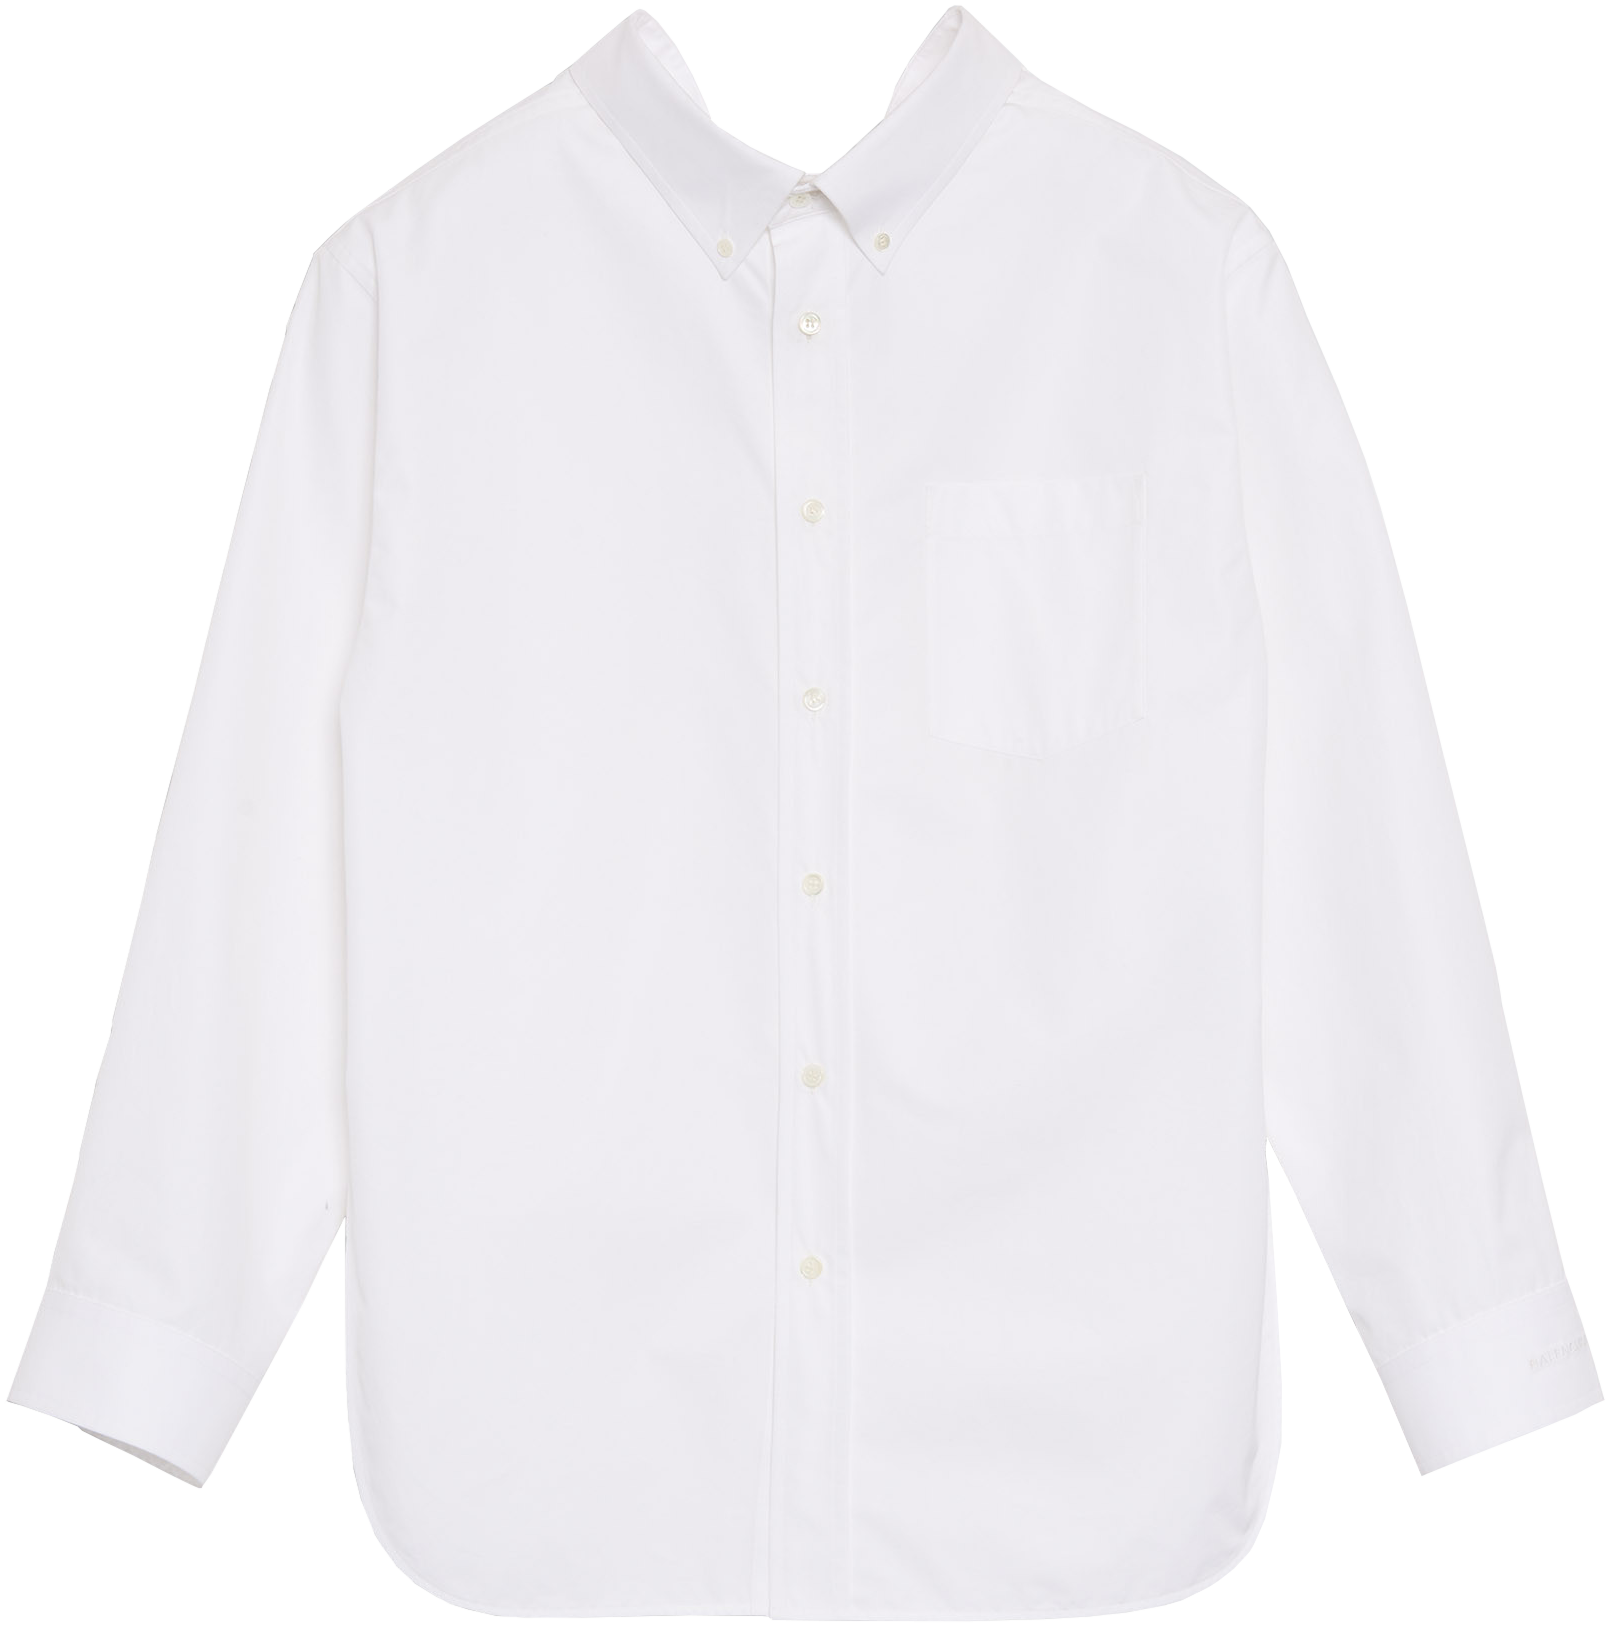 Идеальная белая рубашка — какая она? Рассказывают девушки разных профессий (фото 12)